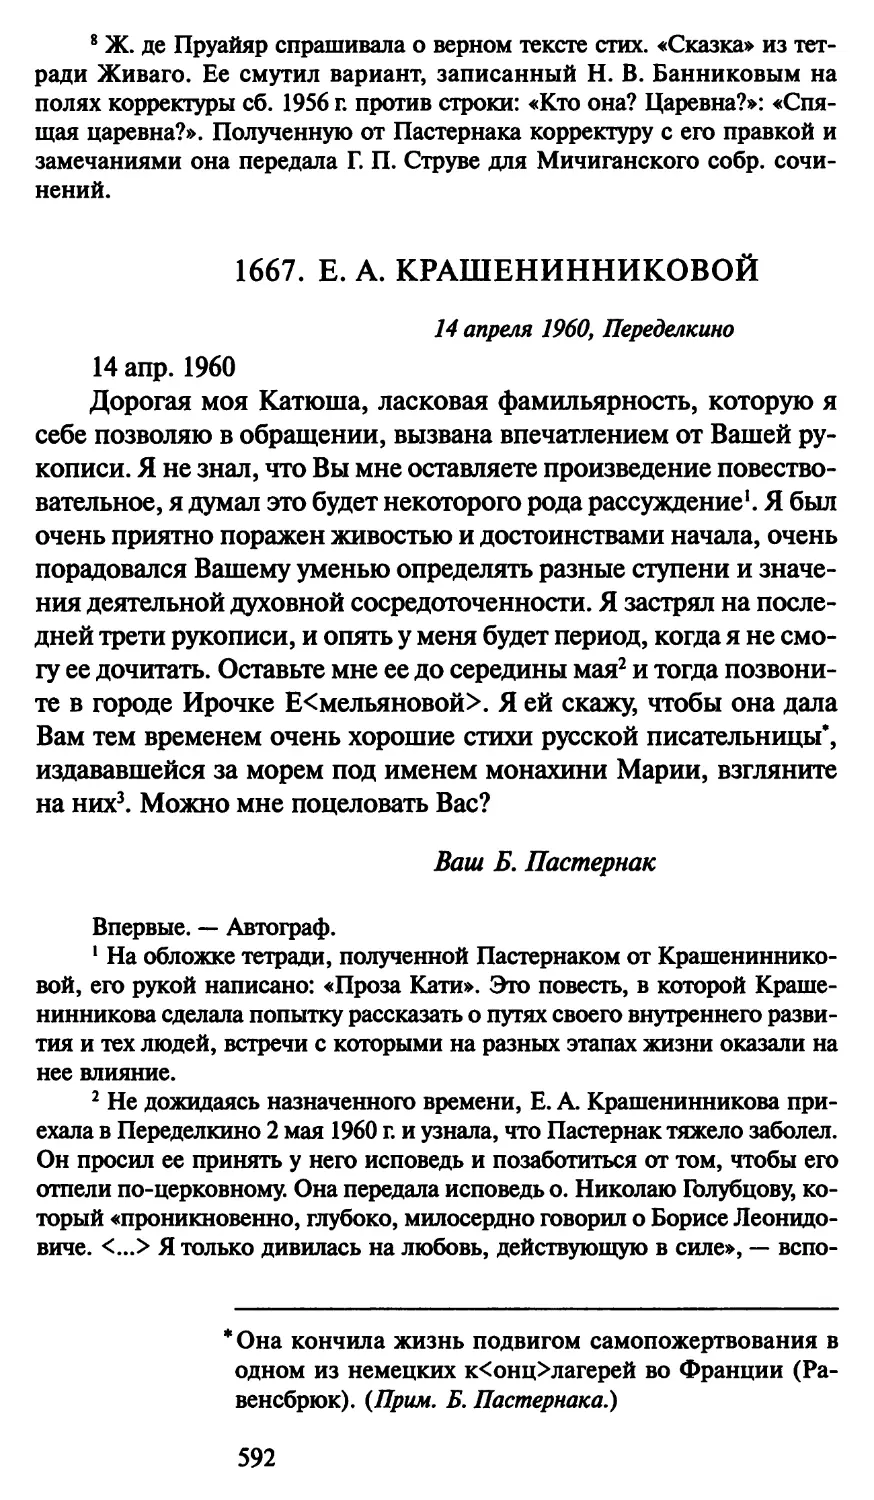 1667. Е. А. Крашенинниковой 14 апреля 1960